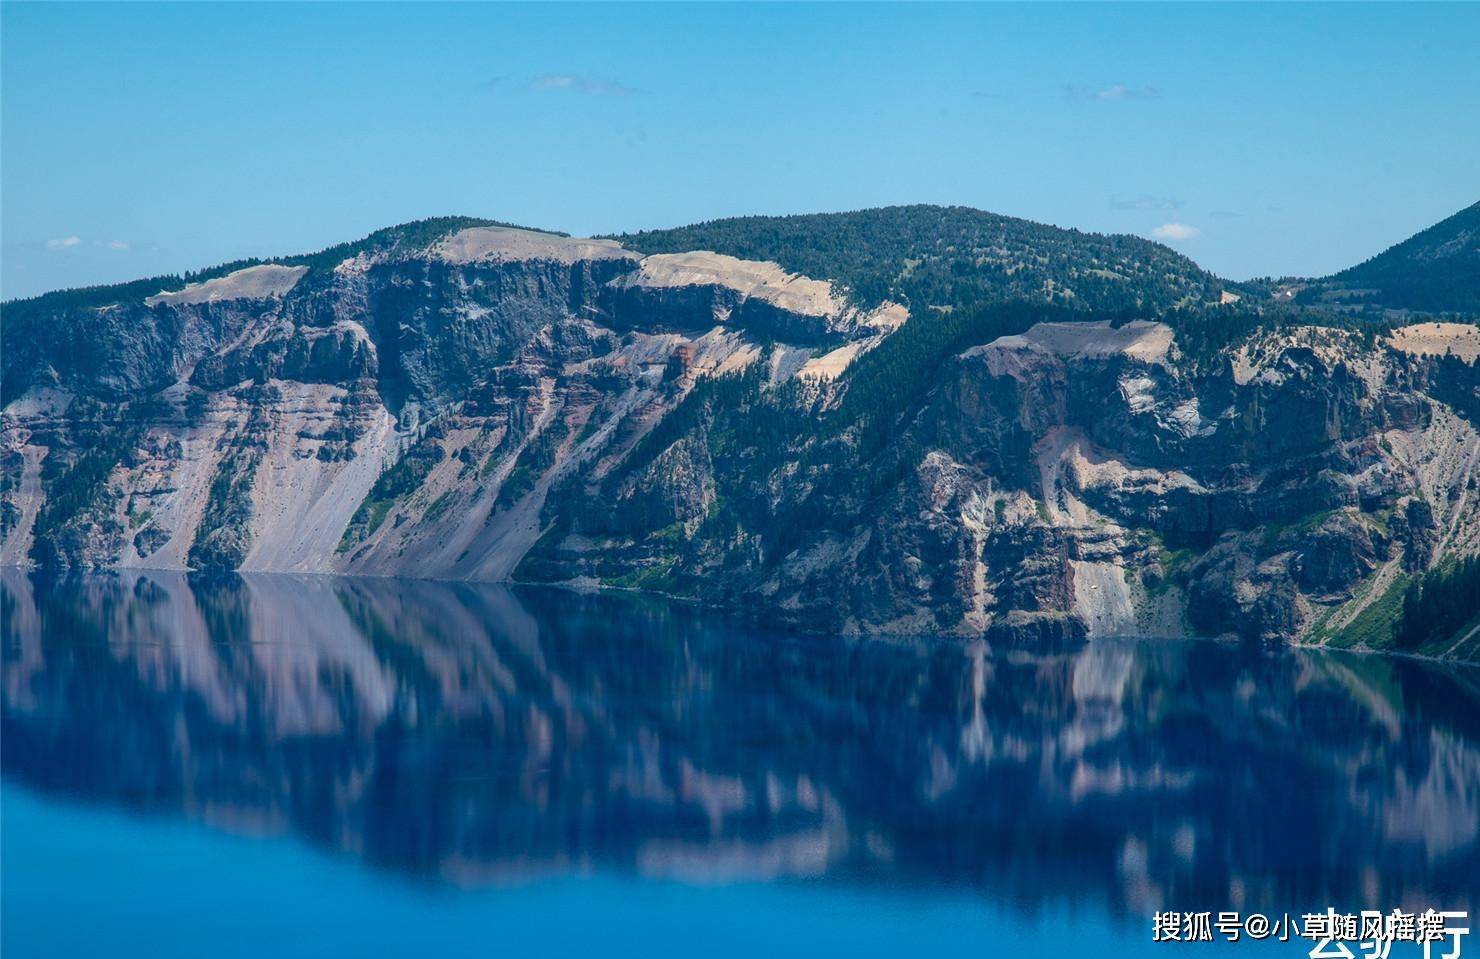 原创世界上最清澈的湖泊,能见到水下30米,美国却允许游客下水游泳